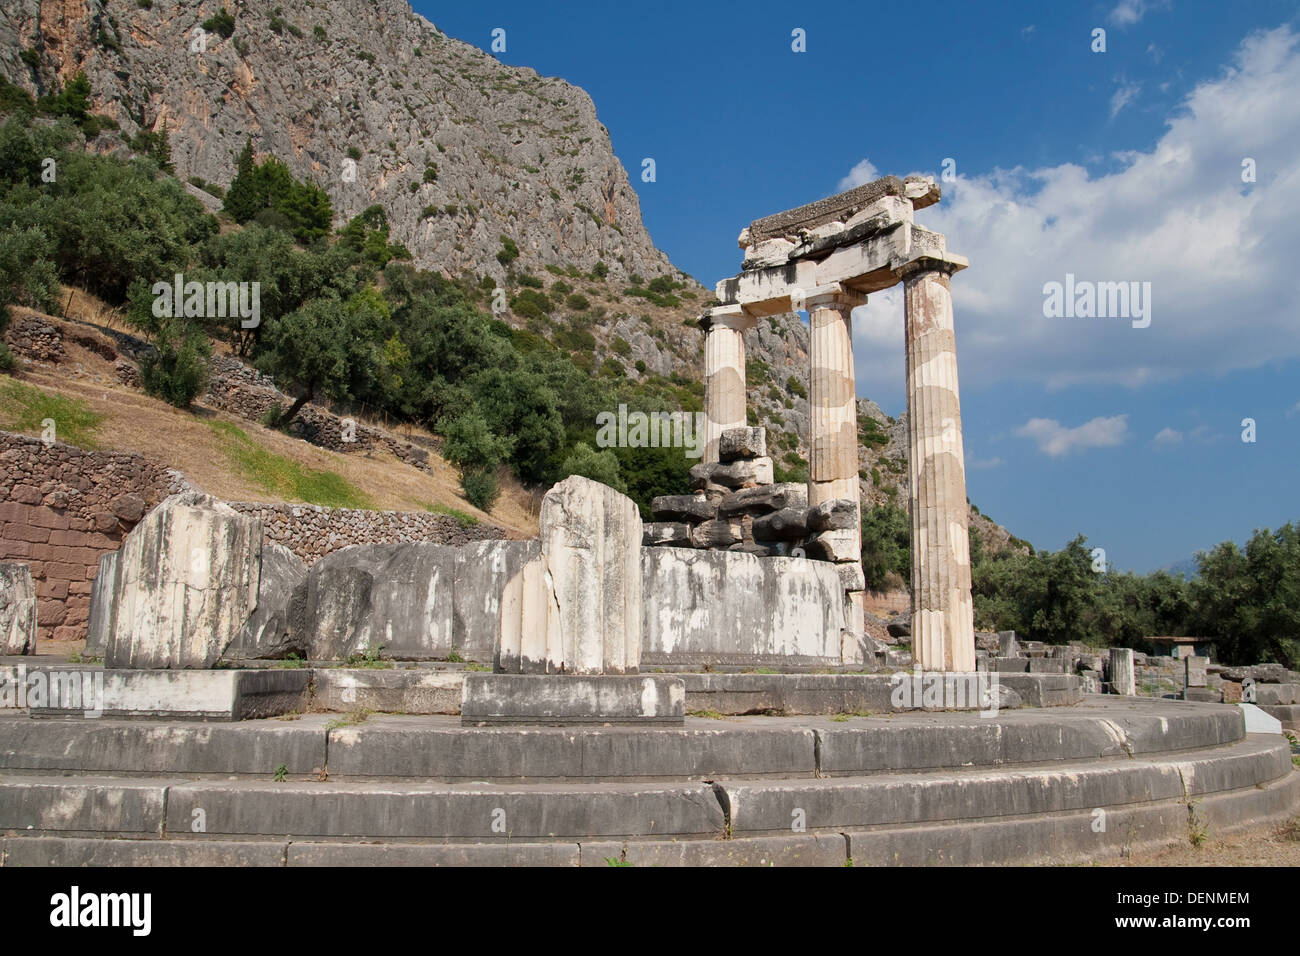 Three standing doric columns in the Sanctuary of Athena Pronaia in Delphi, Greece. Stock Photo